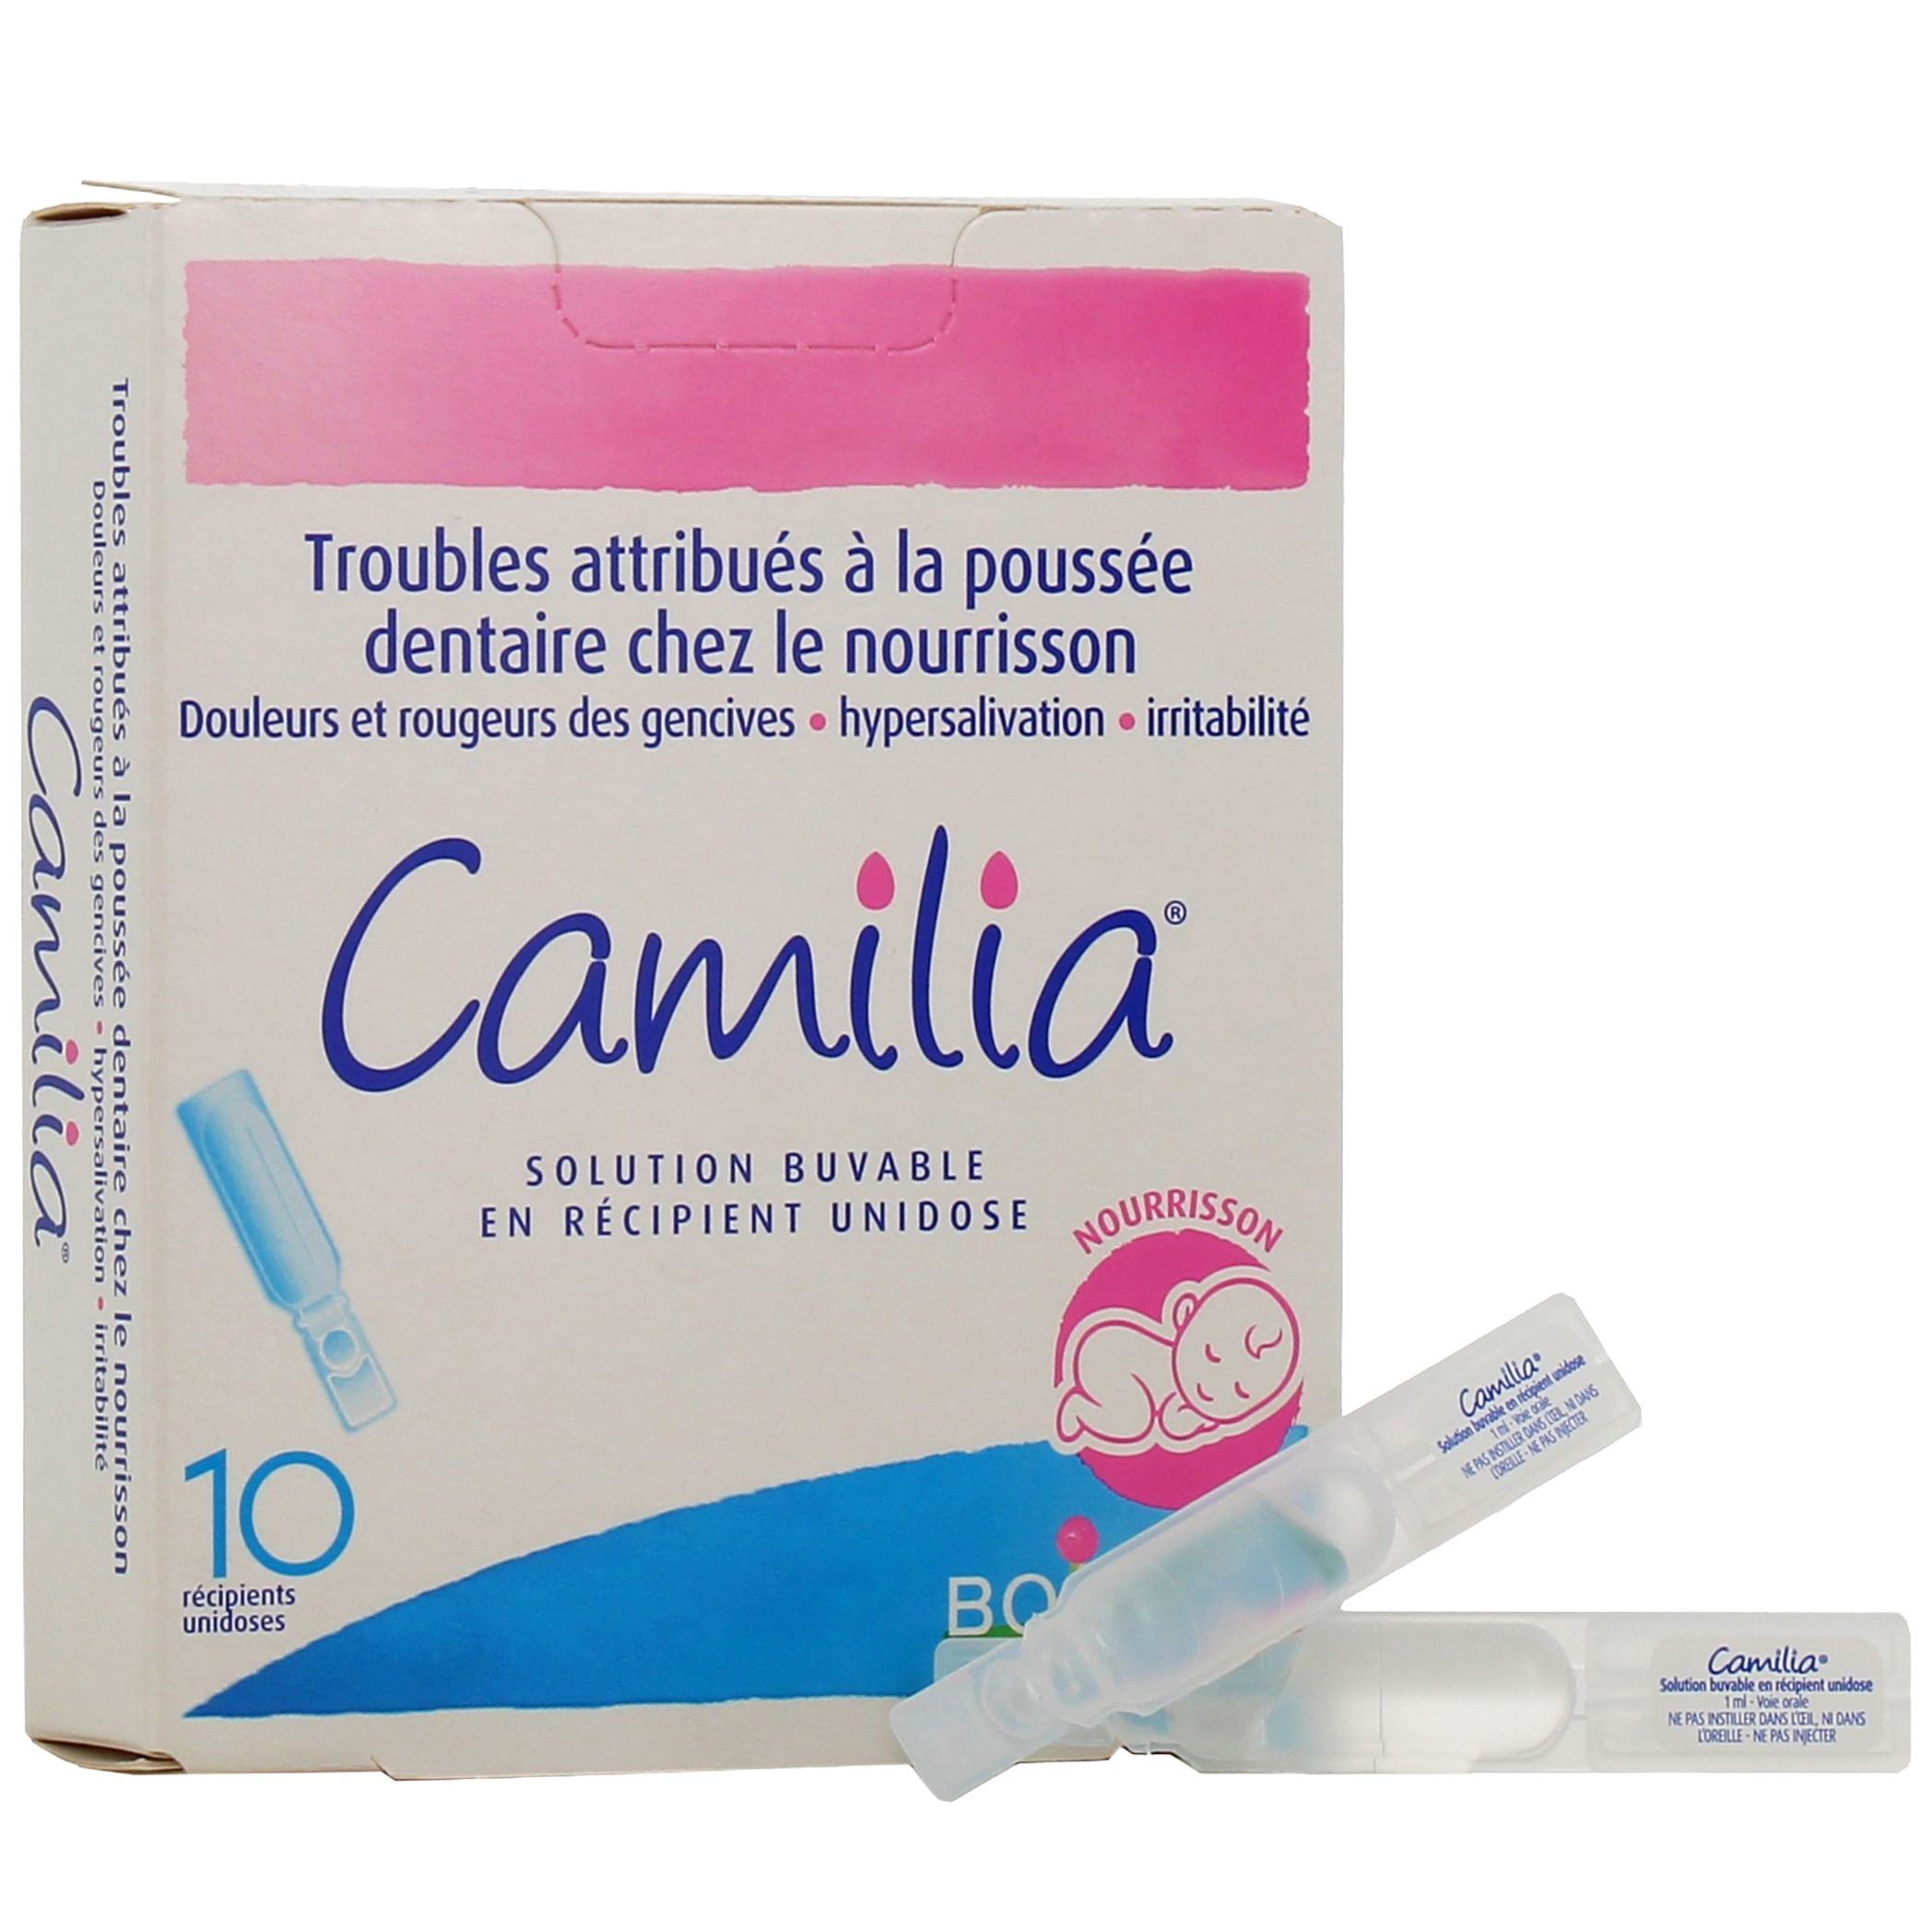 Banc d'essai Boiron – Camilia pour la poussée dentaire – les résultats